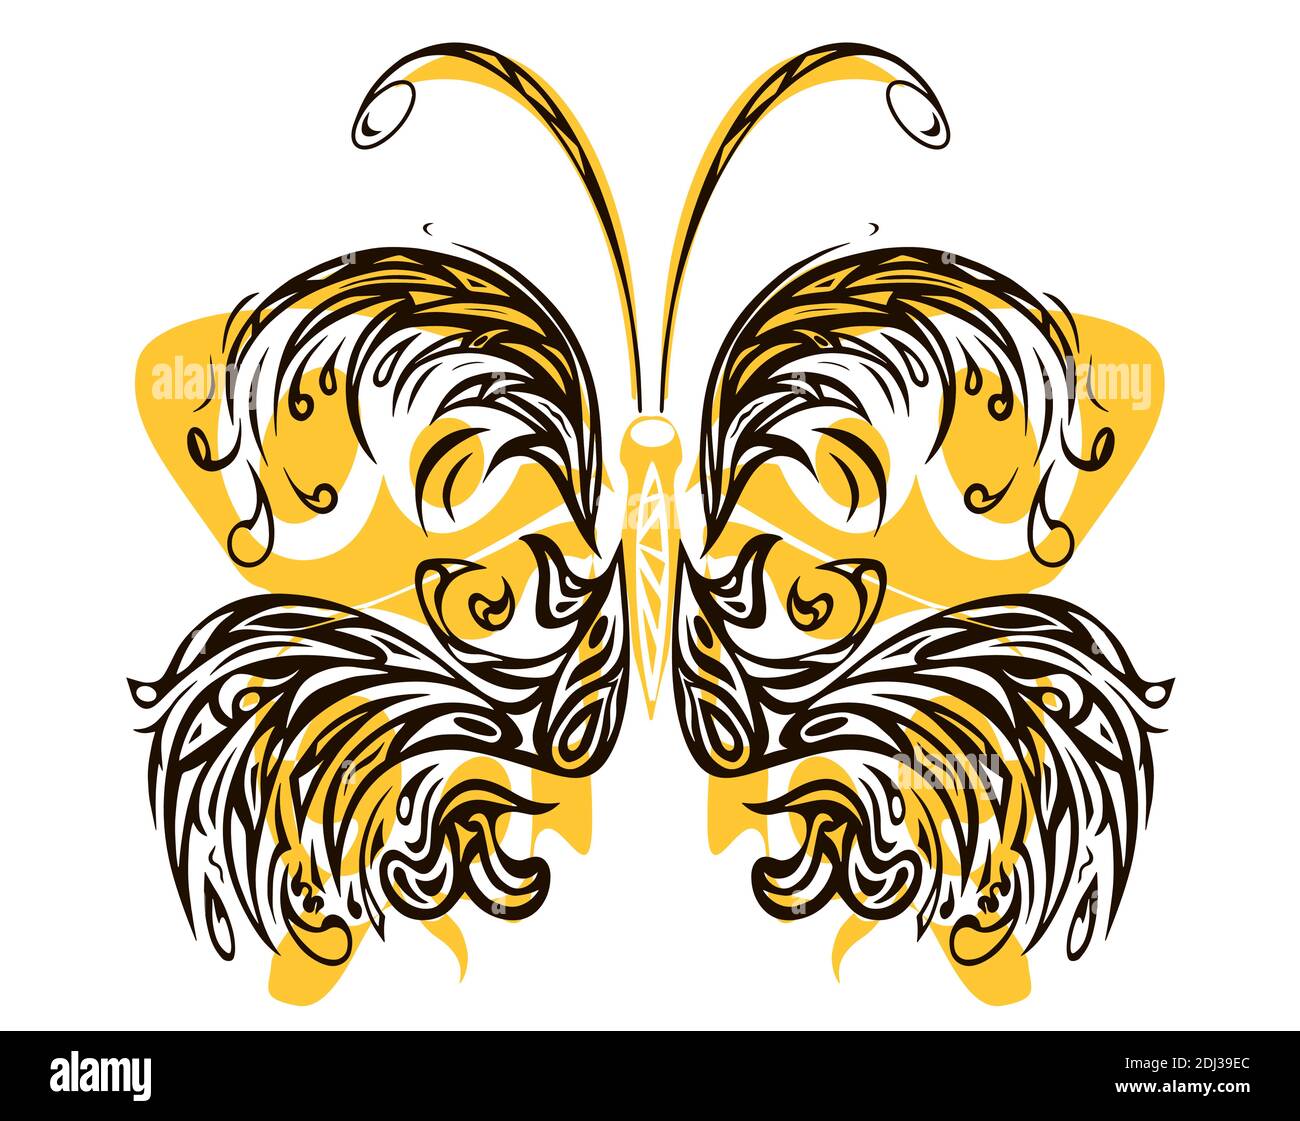 Schmetterling aus Kurven Silhouetten, isoliert auf weißem Hintergrund, eps10 Vektor-Illustration. Stock Vektor